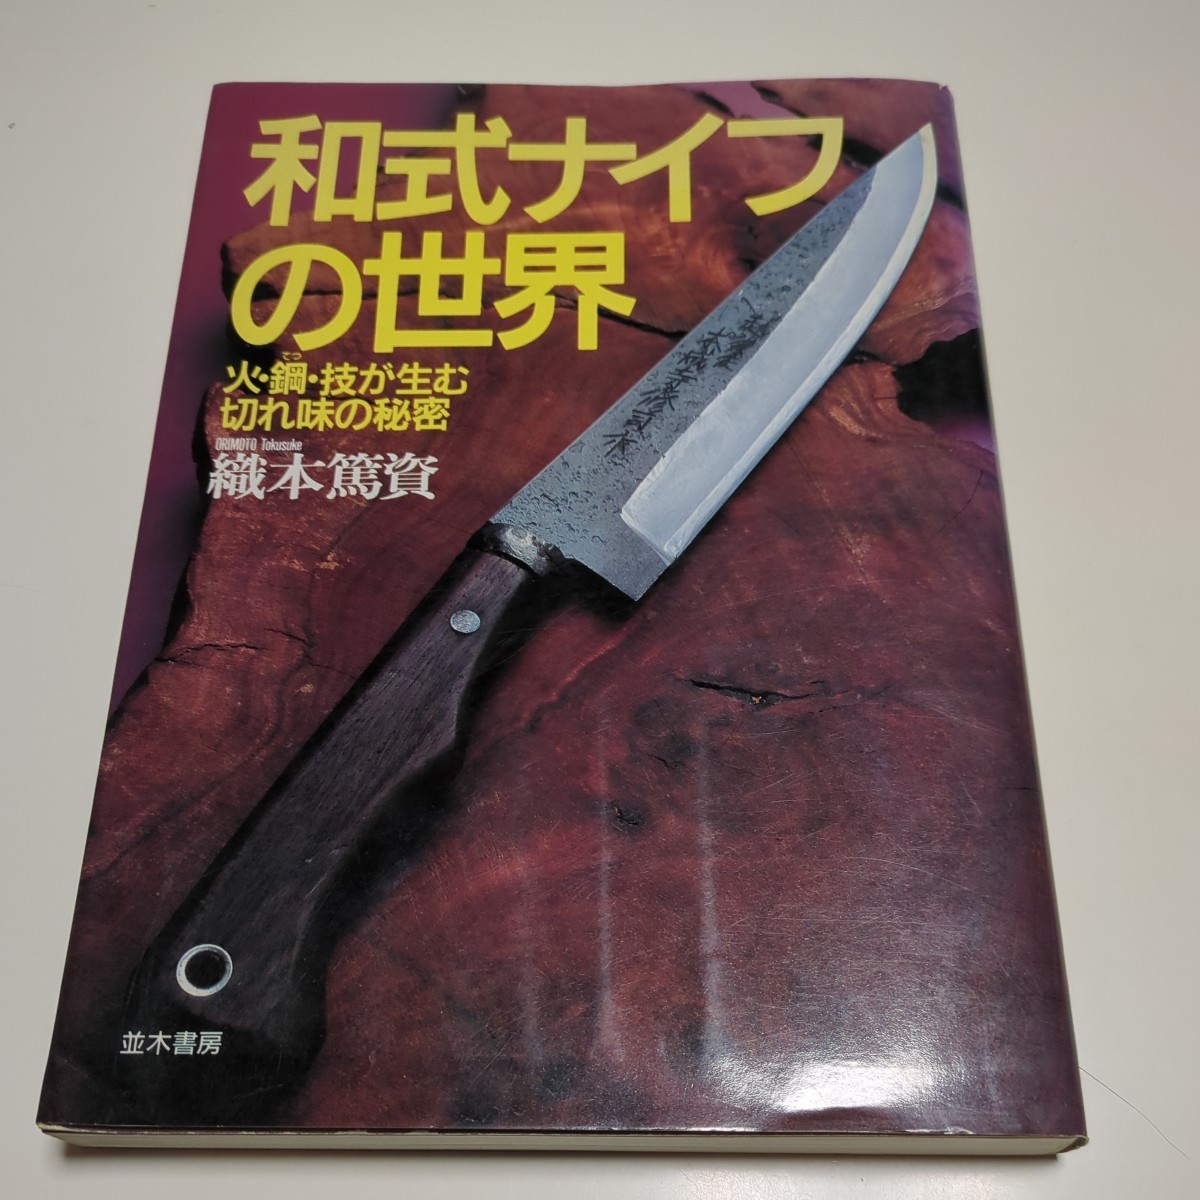 和式ナイフの世界 火・鋼・技が生む切れ味の秘密 織本篤資 並木書房